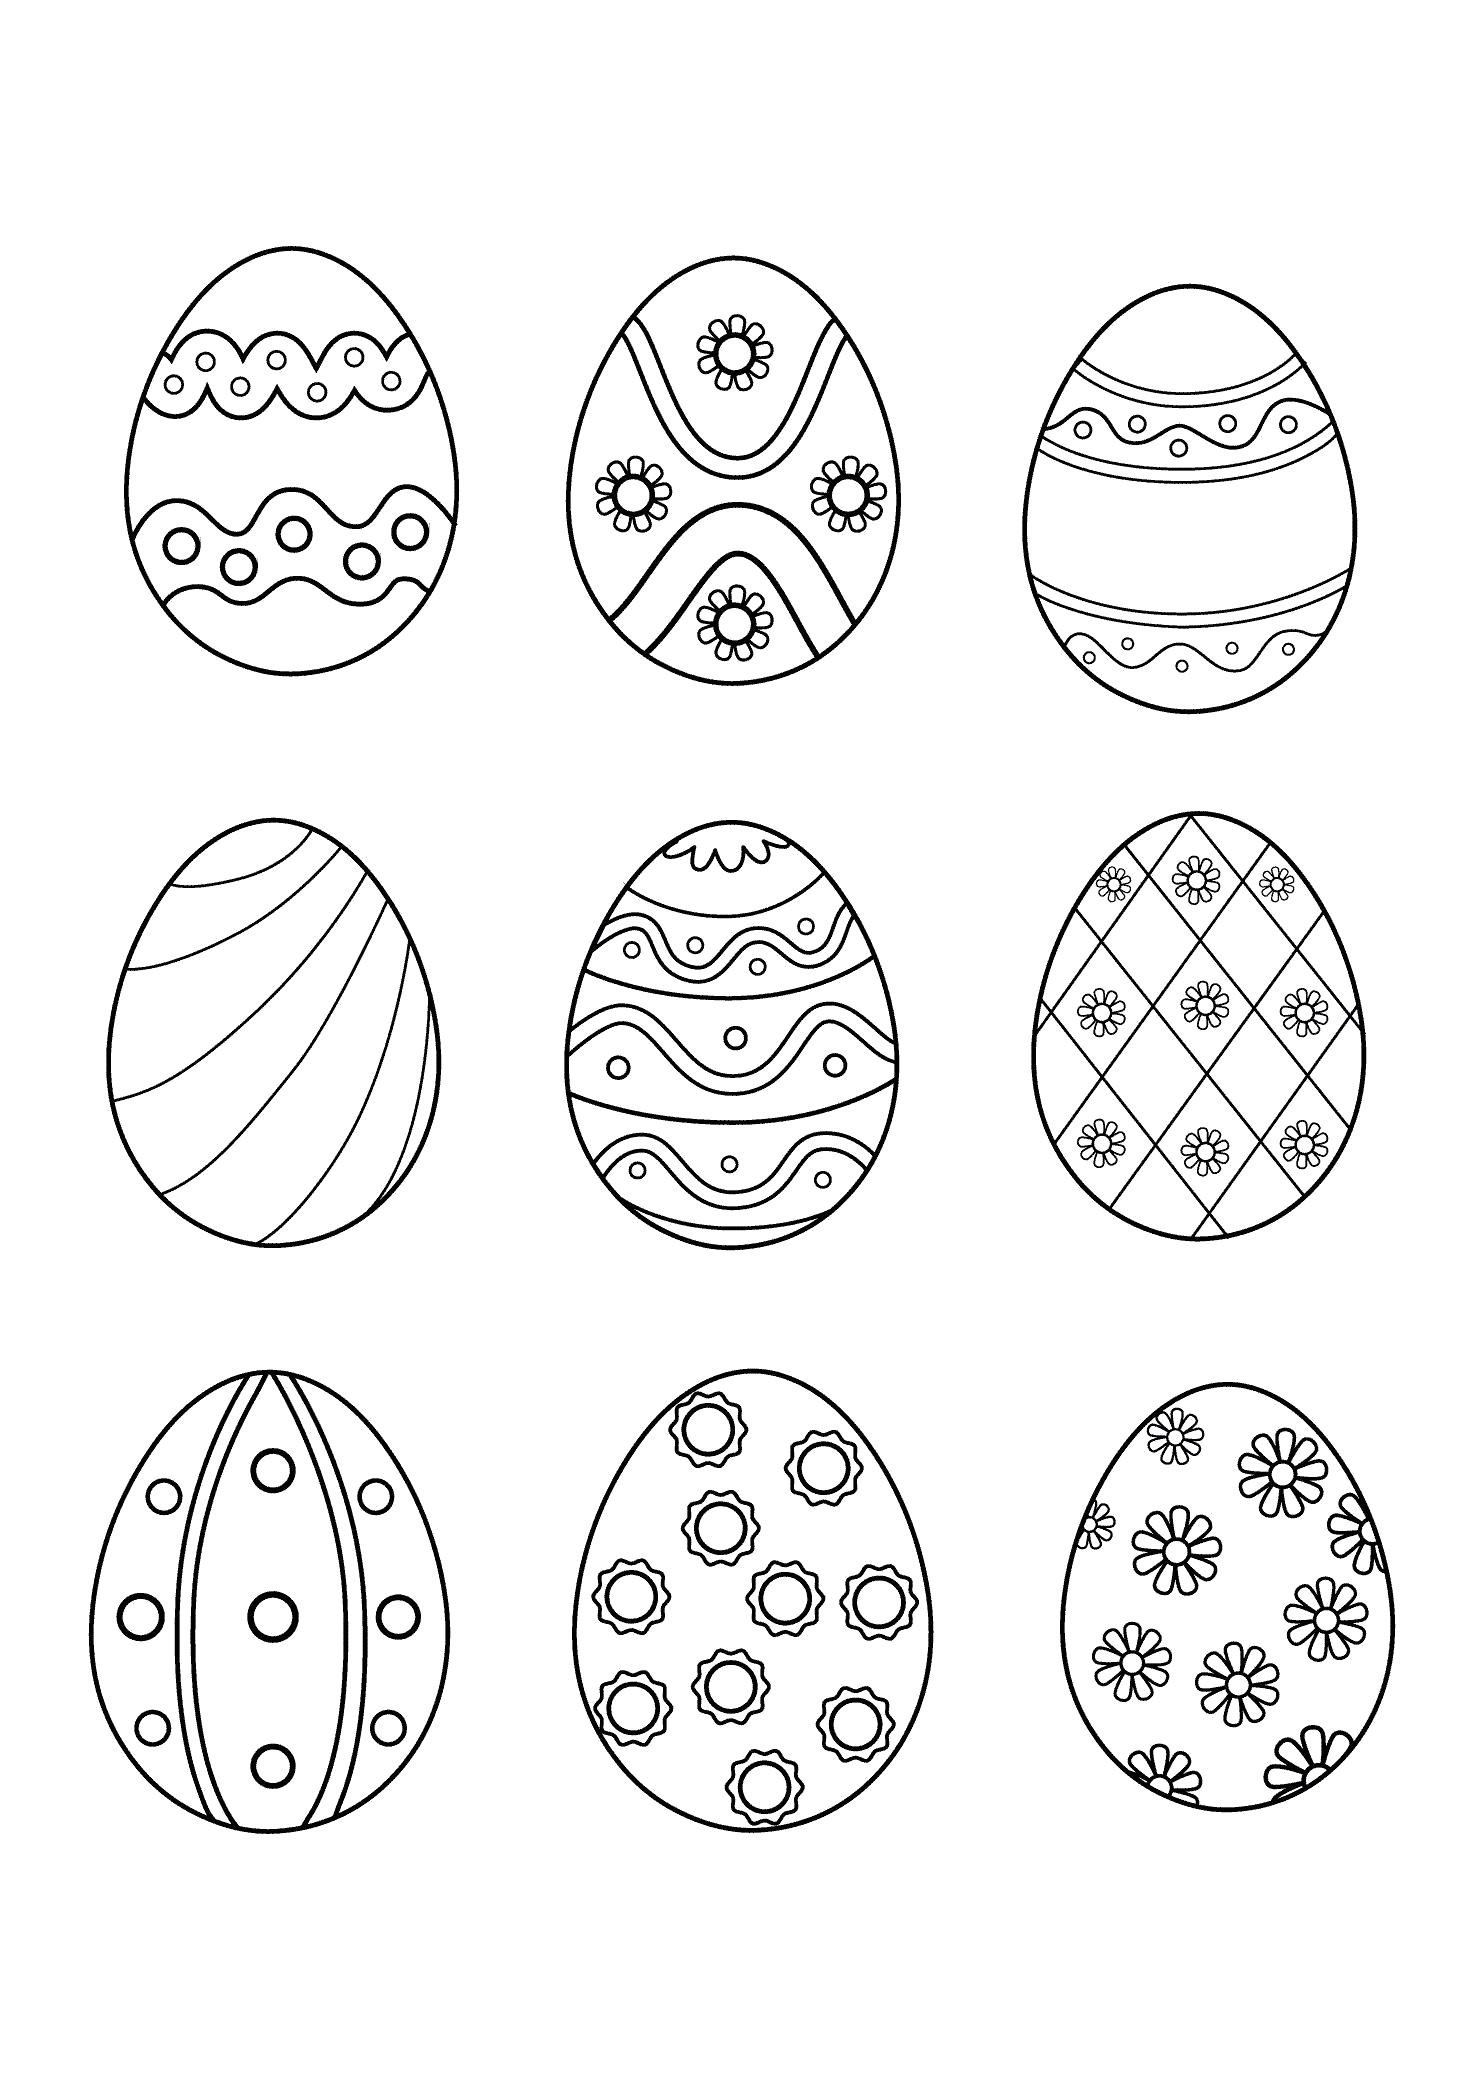 Раскраска  Яйца.  Пасхальные яйца, раскрашенные яйца, яйца к пасхе, картинка пасха. Скачать Пасха.  Распечатать Пасха